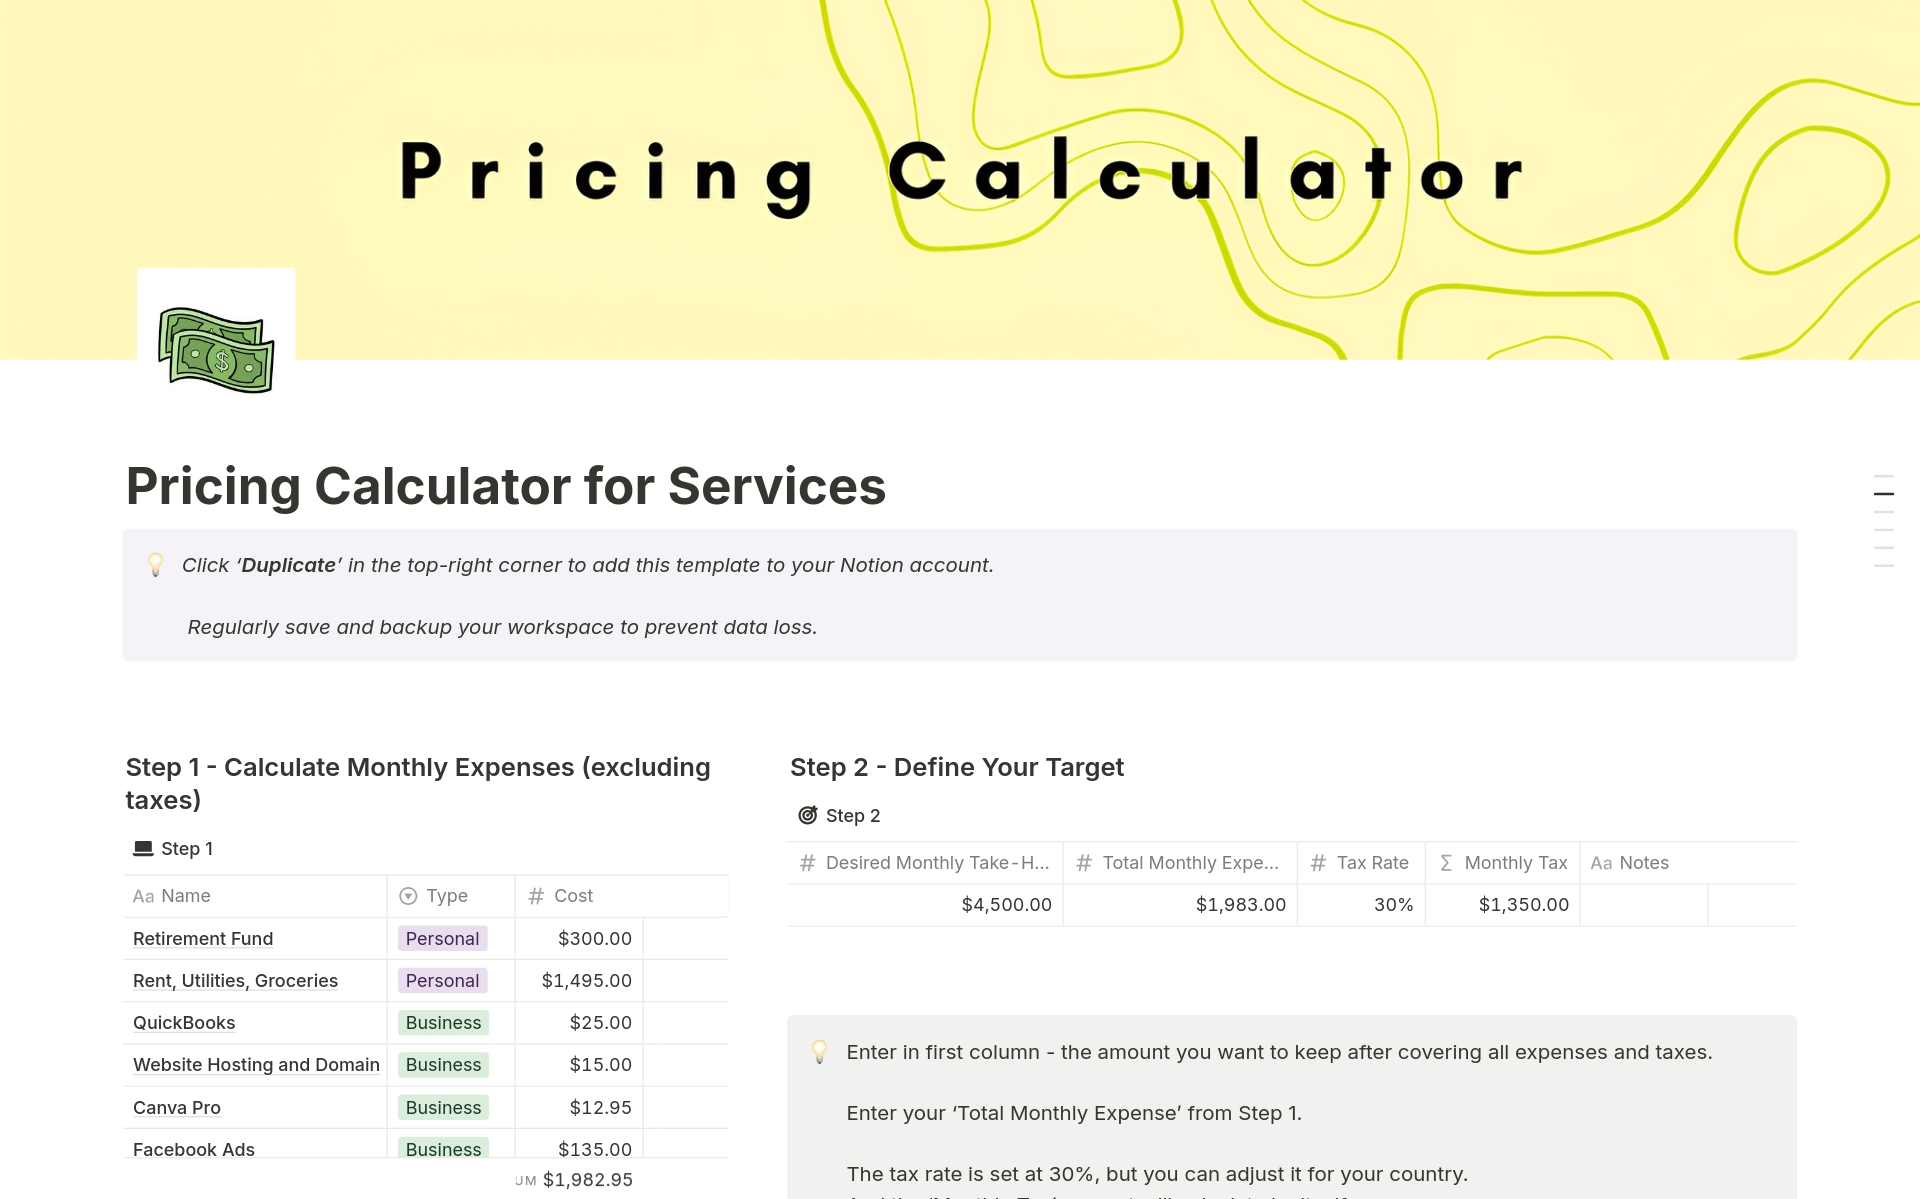 Uma prévia do modelo para Pricing Calculator for Services